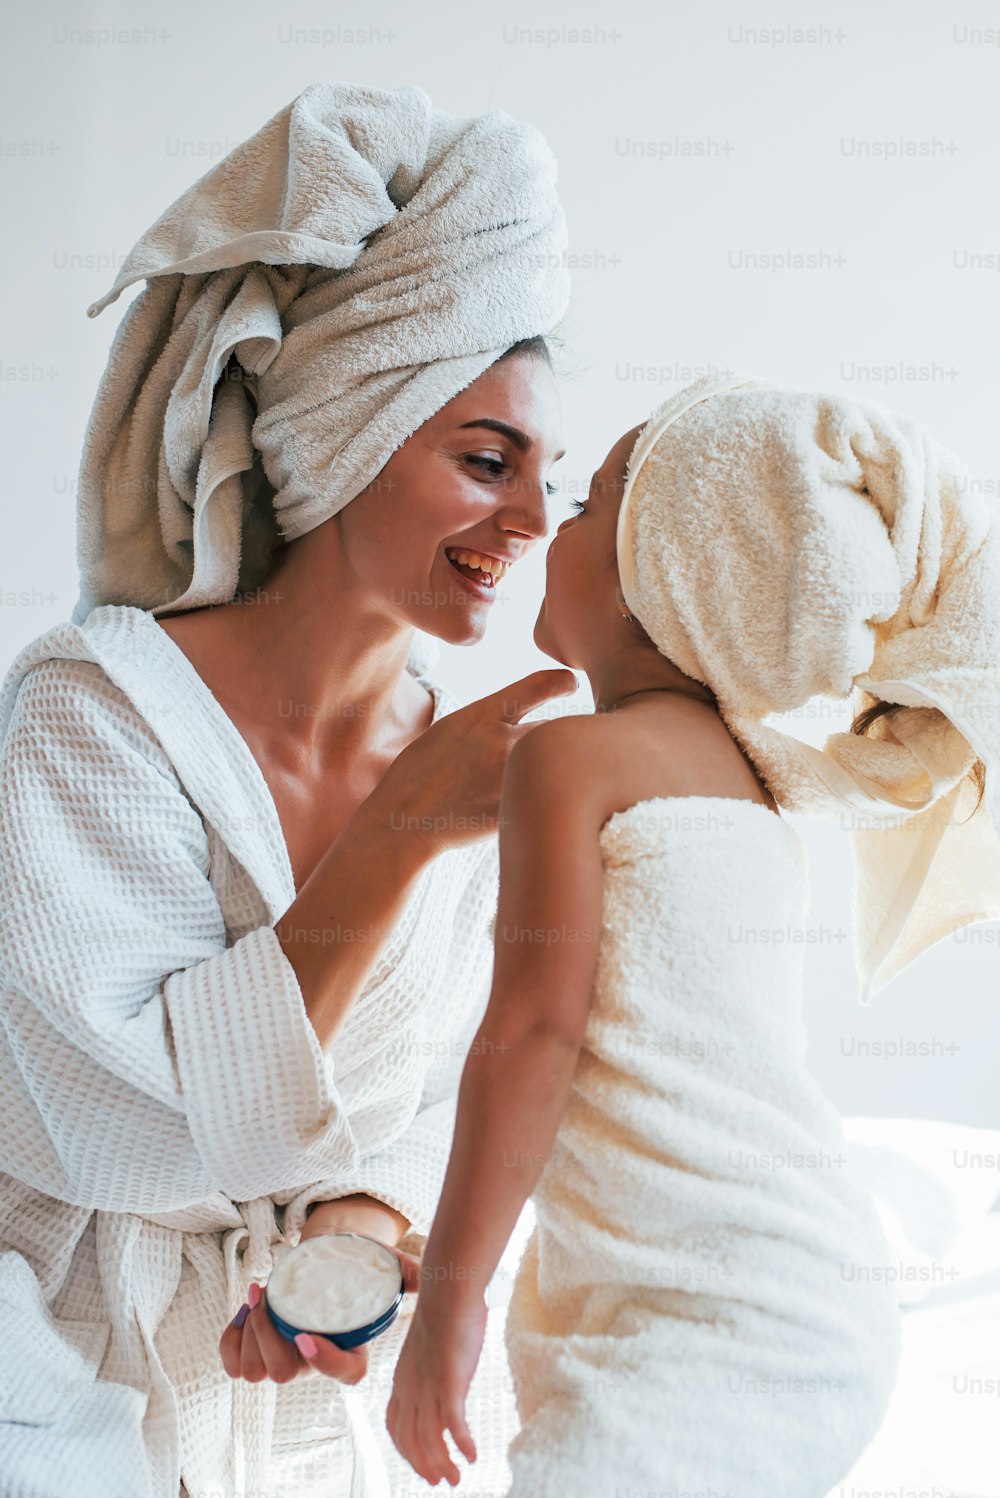 크림을 사용하여 피부를 맑게합니다. 그녀의 daugher와 함께 젊은 어머니는 하얀 방에서 실내에서 아름다움의 날을 보낸다.